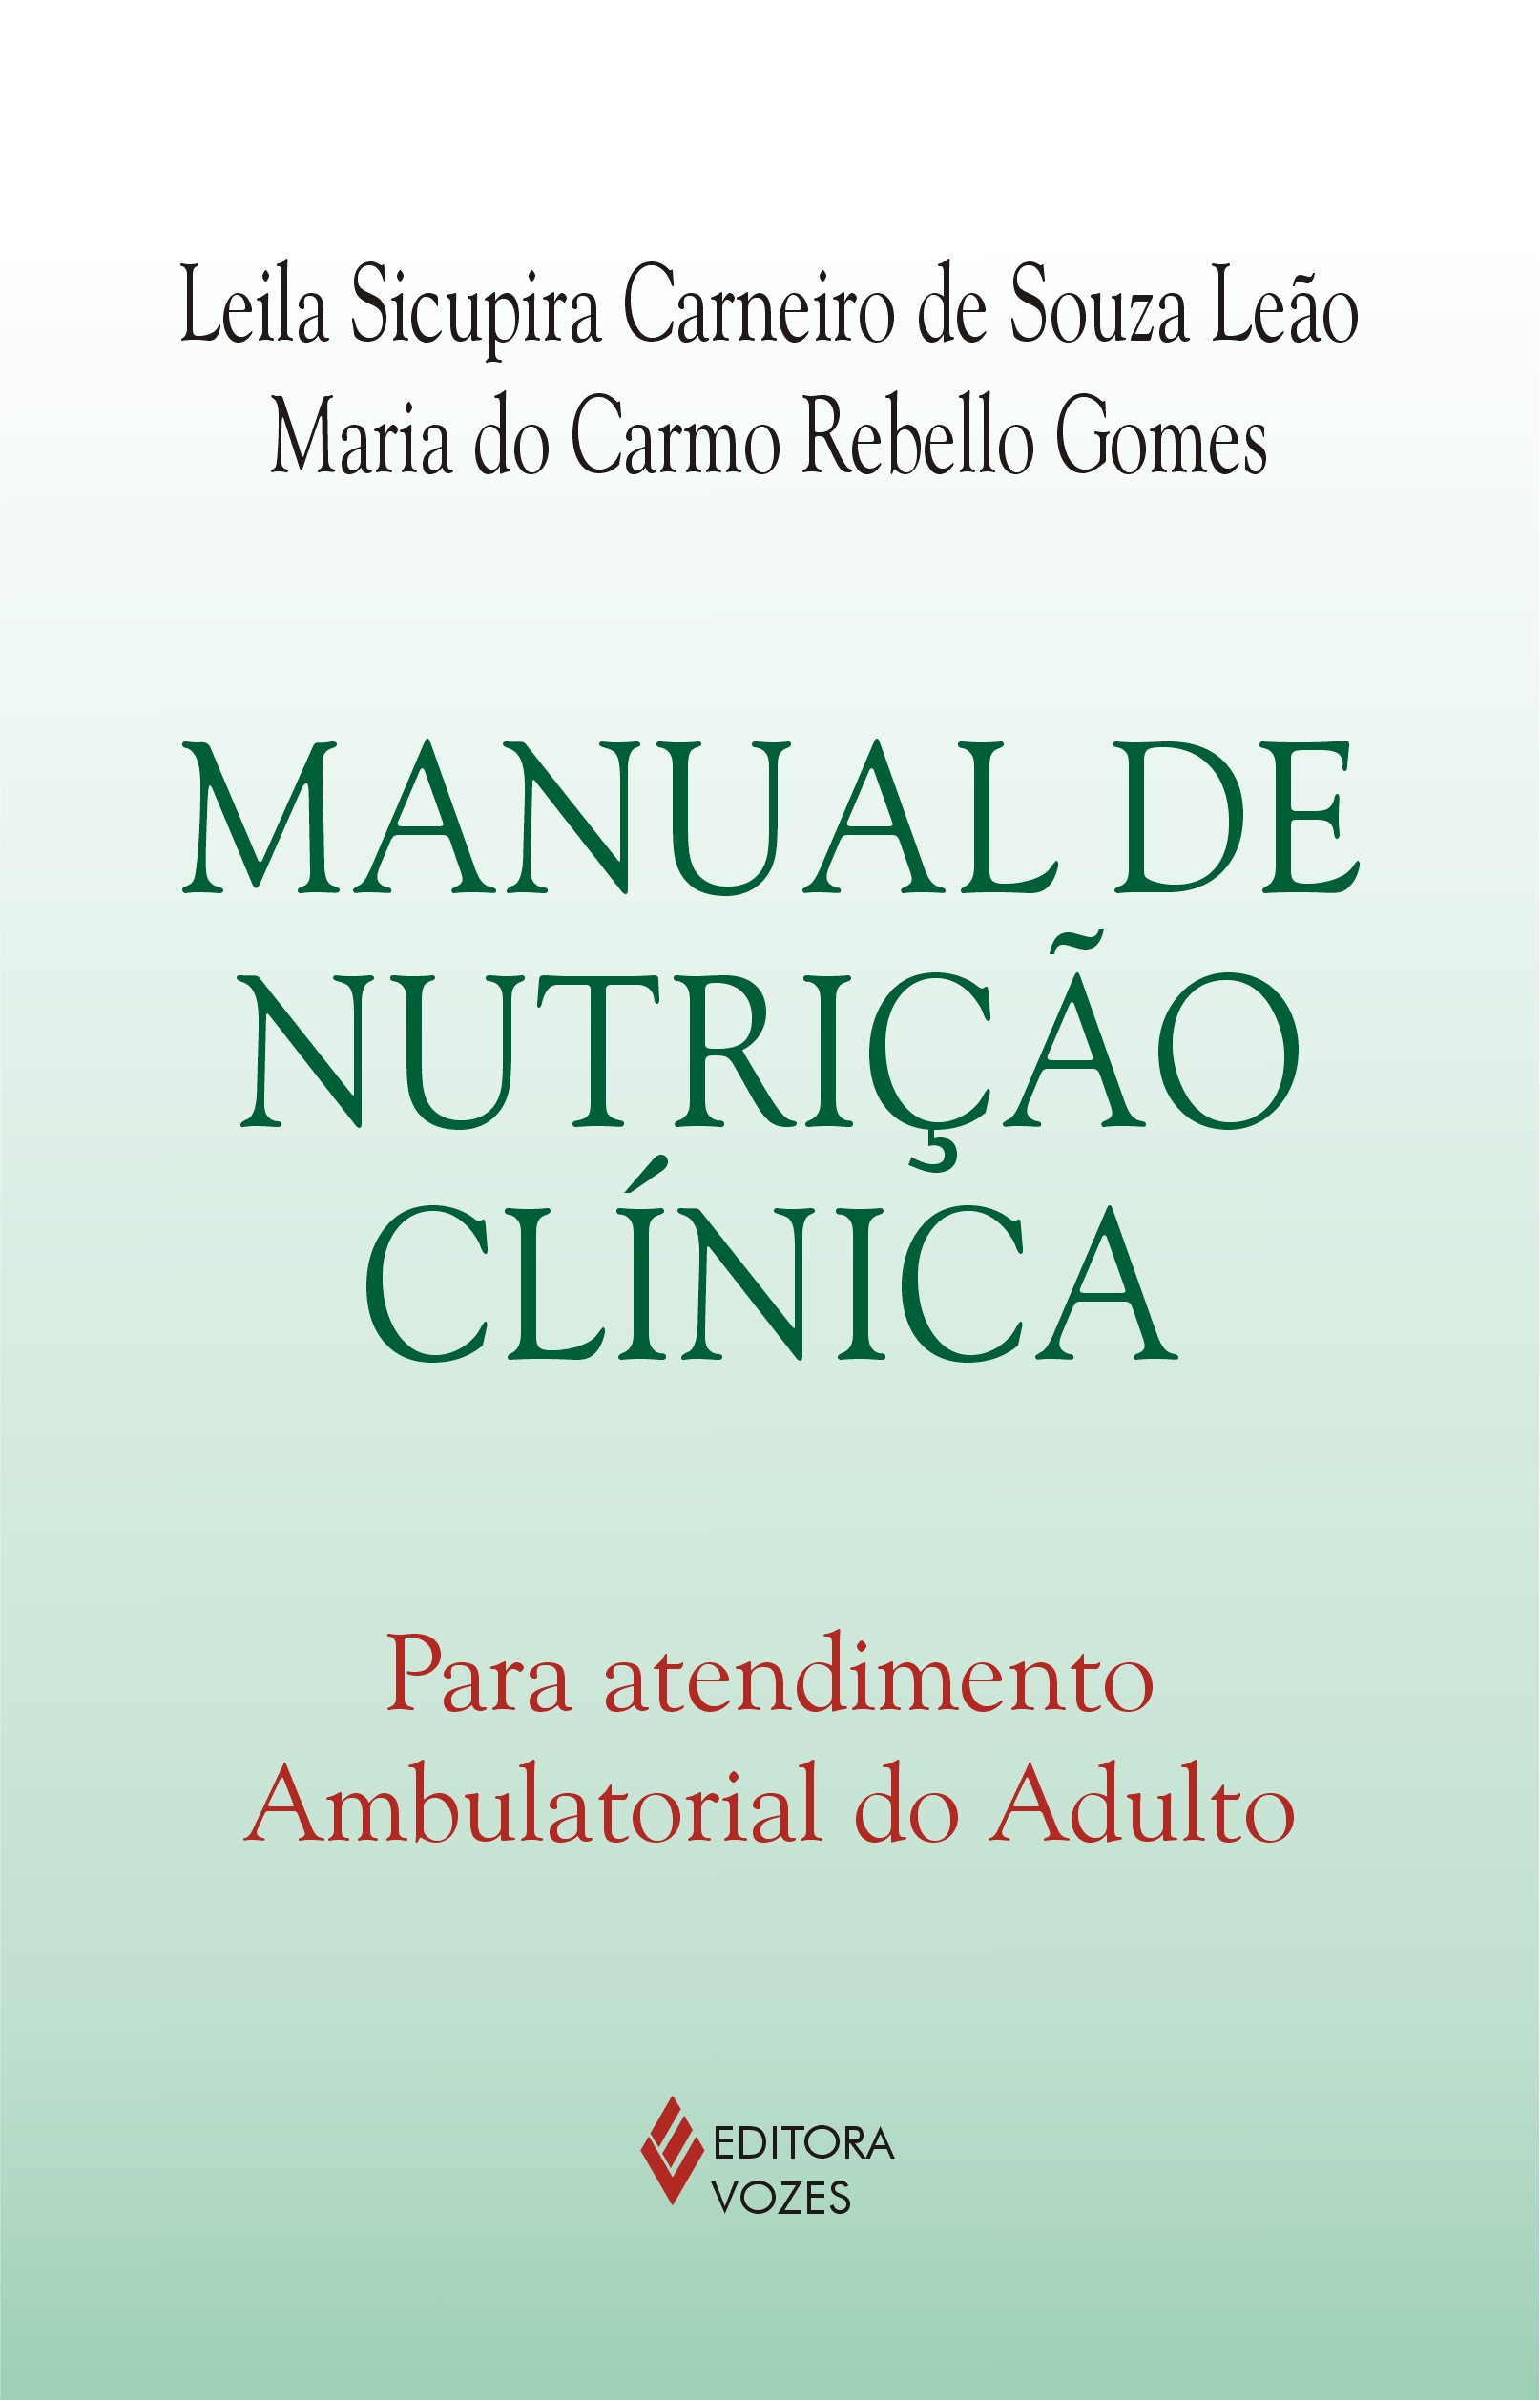 Manual De Nutricao Clinica - Para Atendimento Ambulatorial Do Adulto